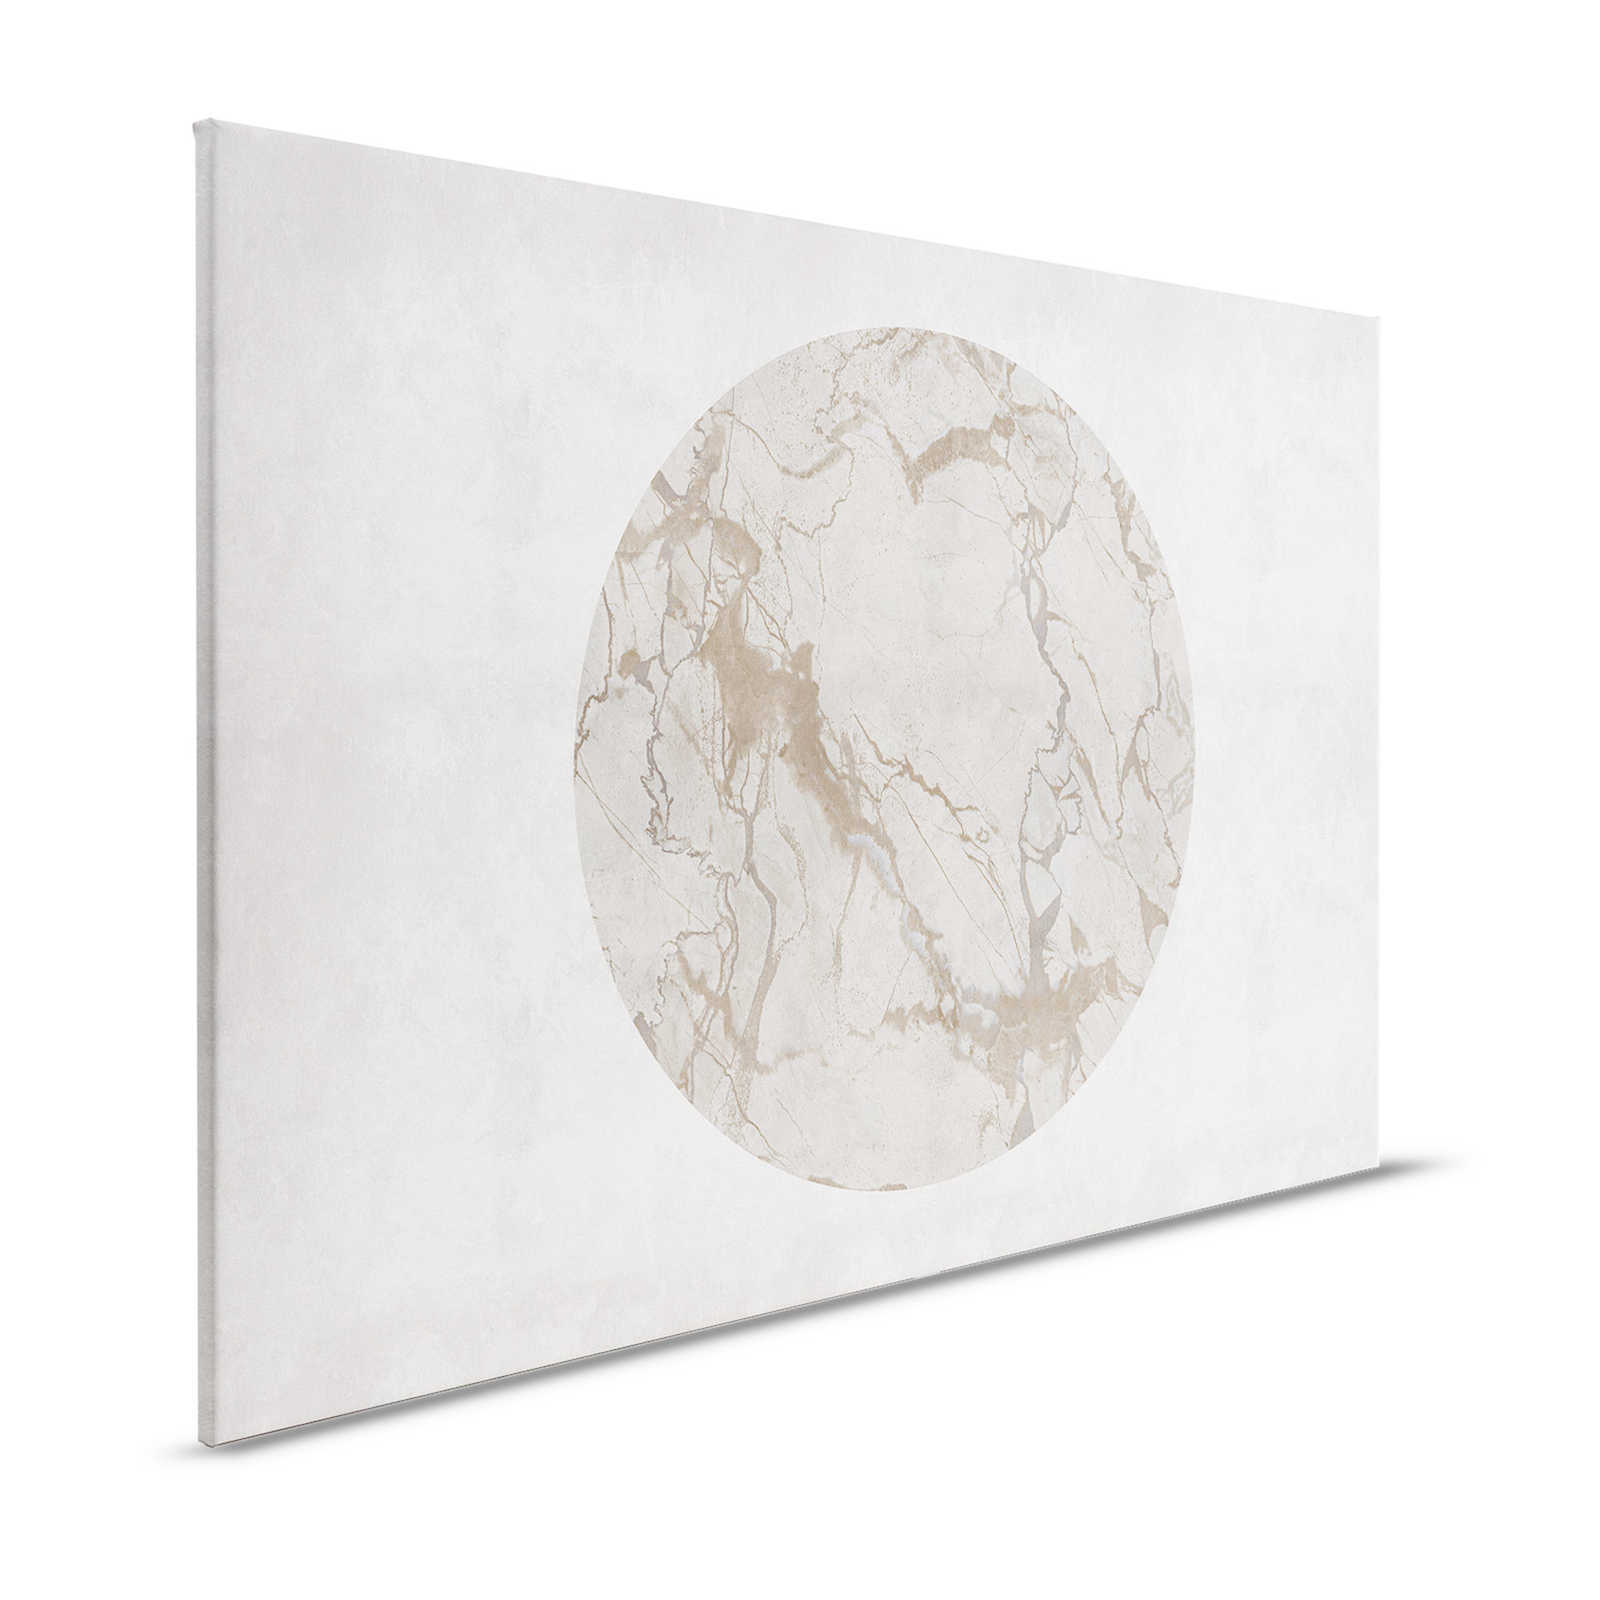 Mercurio 2 - Toile Greige aspect pierre avec effet marbre - 1,20 m x 0,80 m
